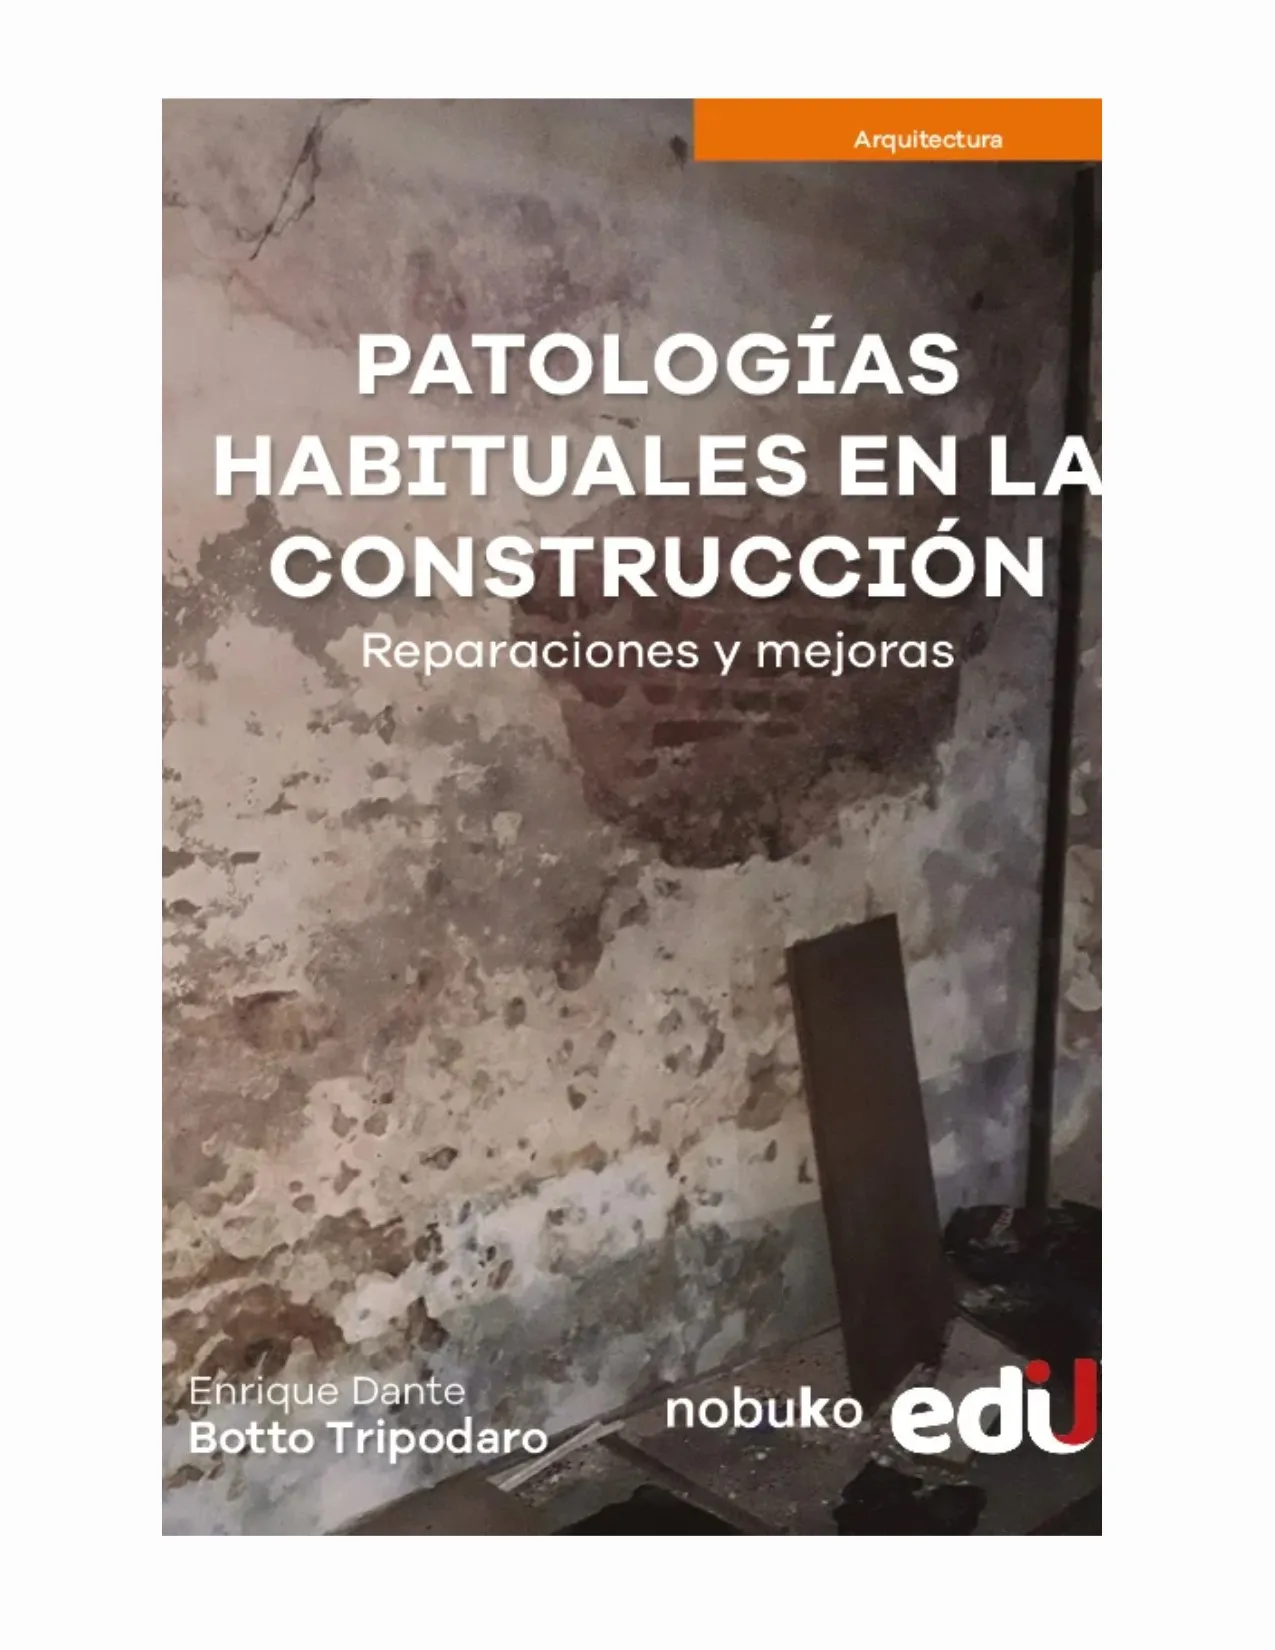 Patologias Habituales En La Construccion